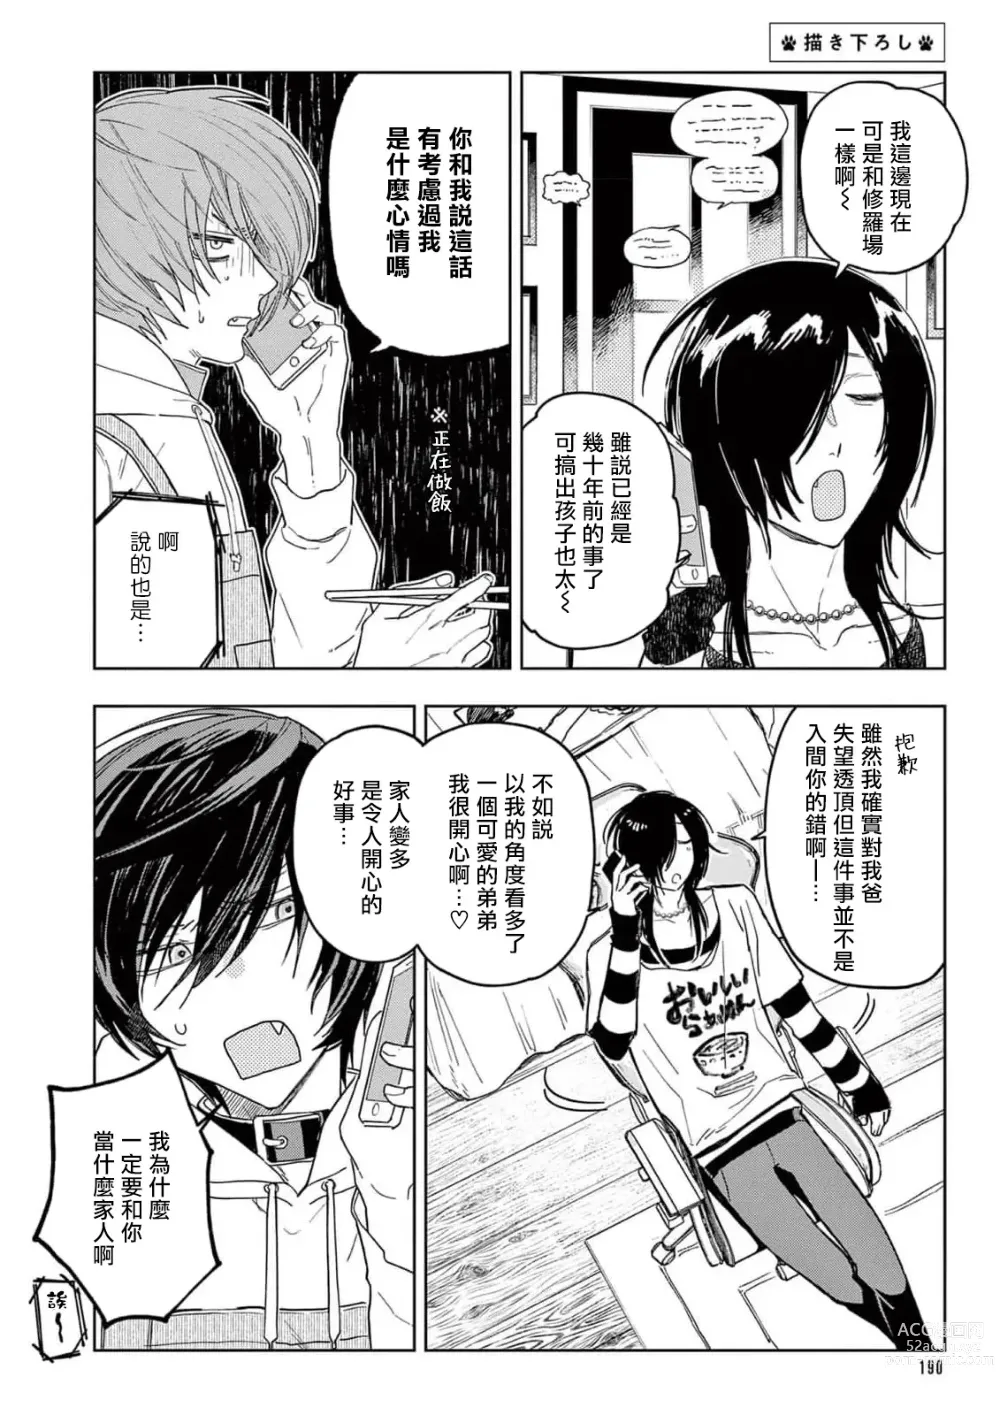 Page 197 of manga 服从与轻咬2 06-11